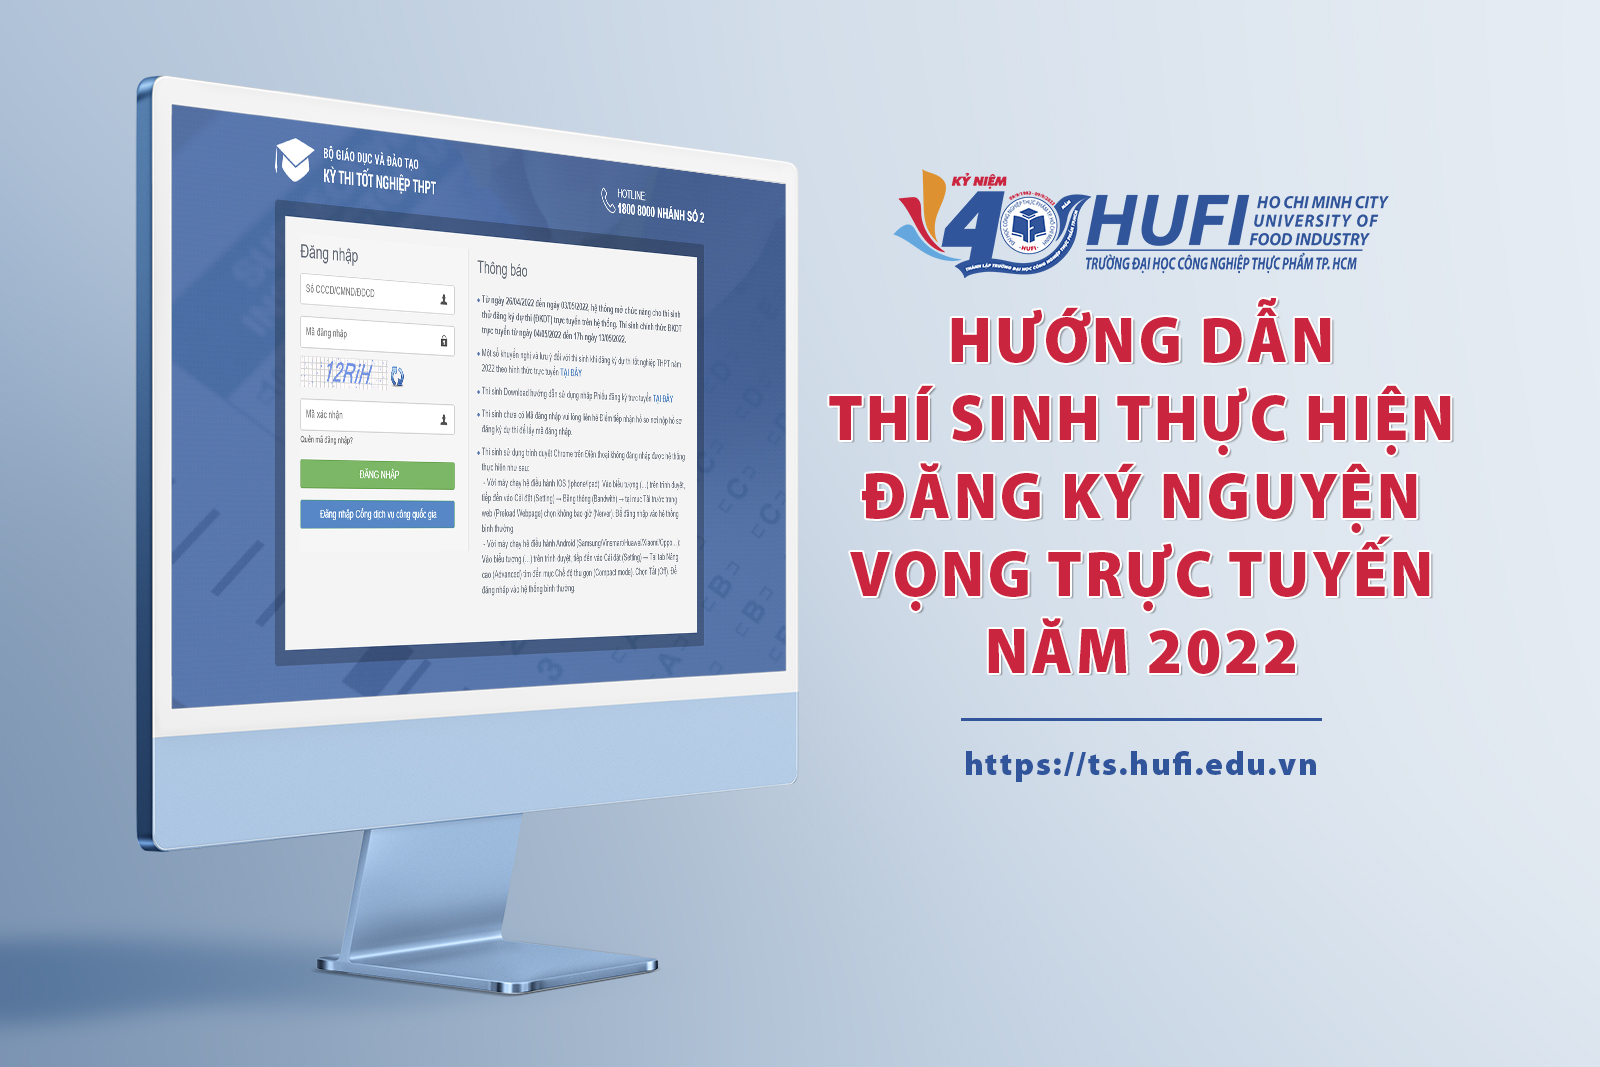 Hướng dẫn thí sinh thực hiện đăng ký nguyện vọng trực tuyến năm 2022